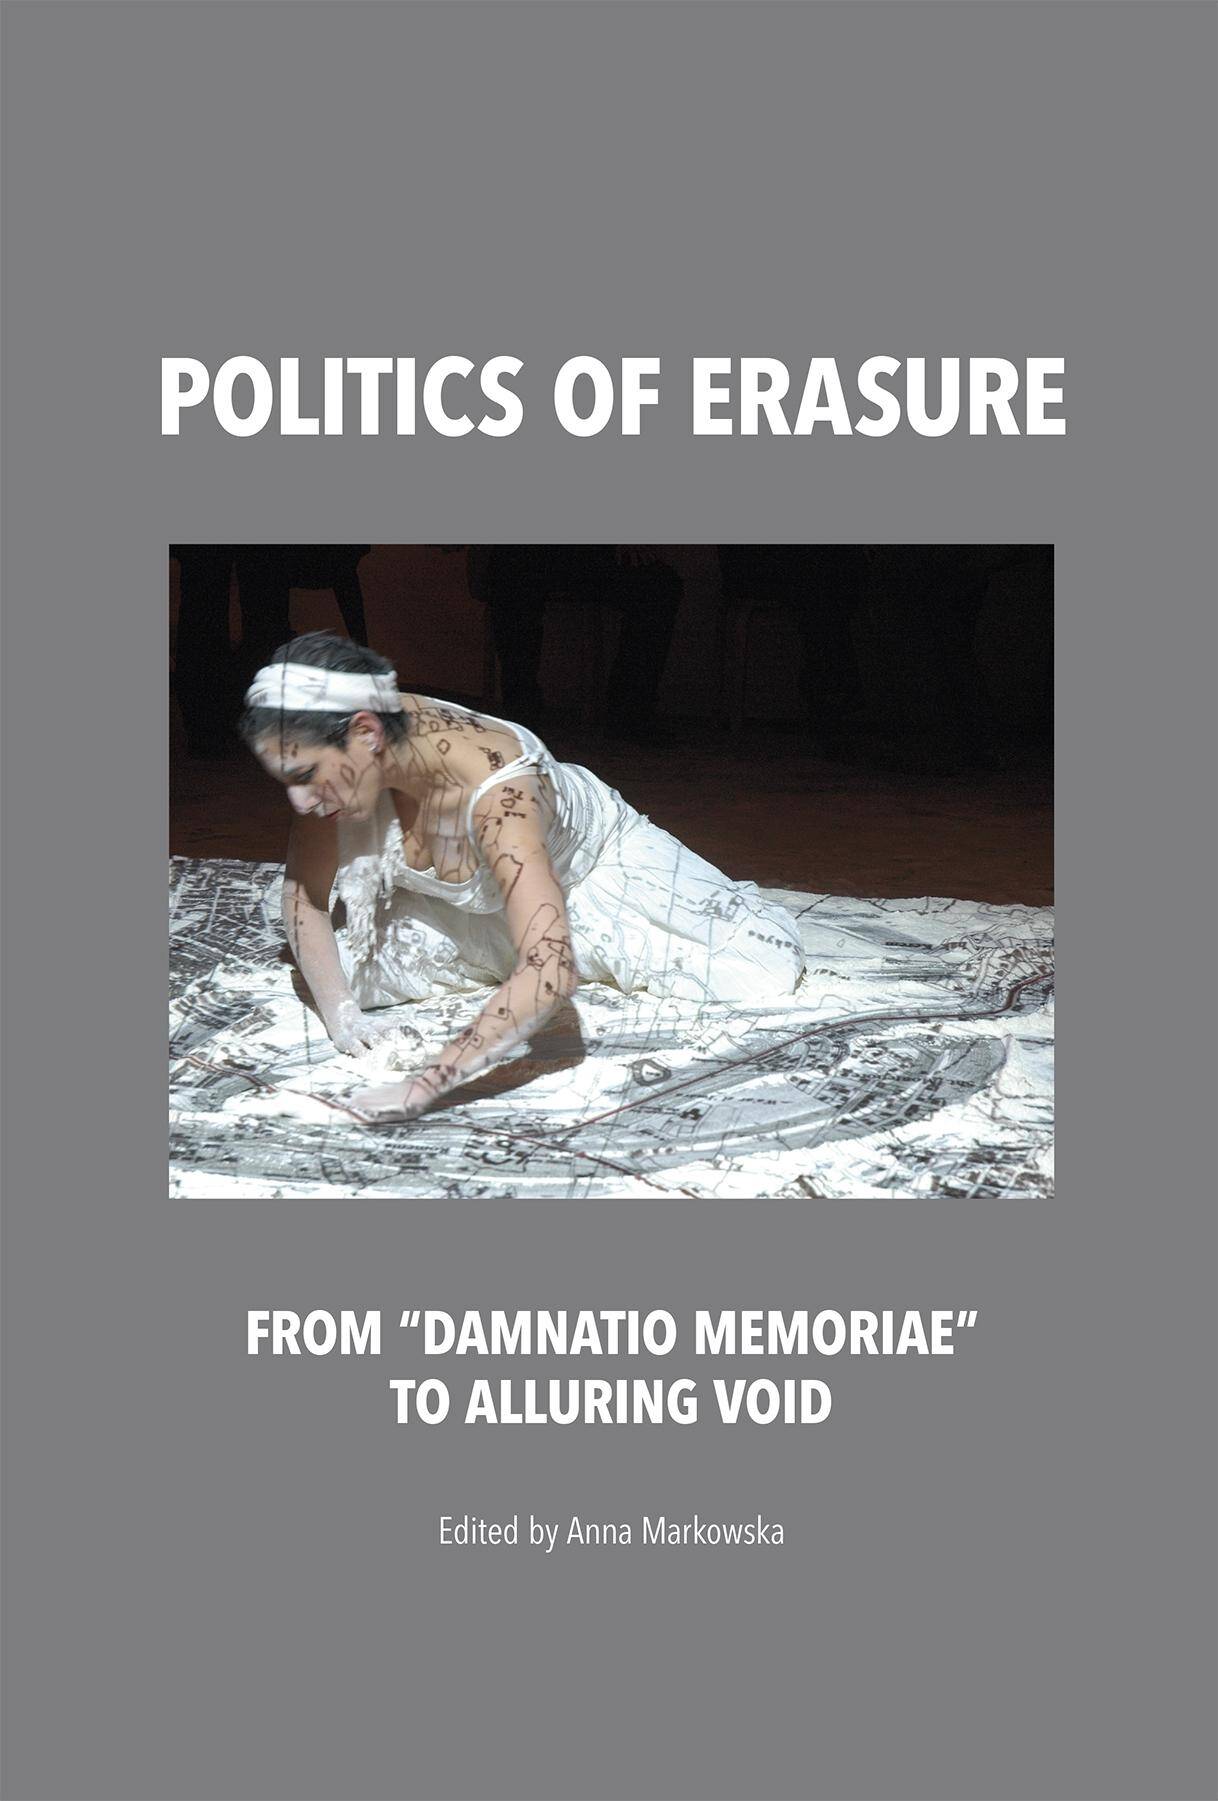 Politics of erasure from damnatio memoriae to alluring void